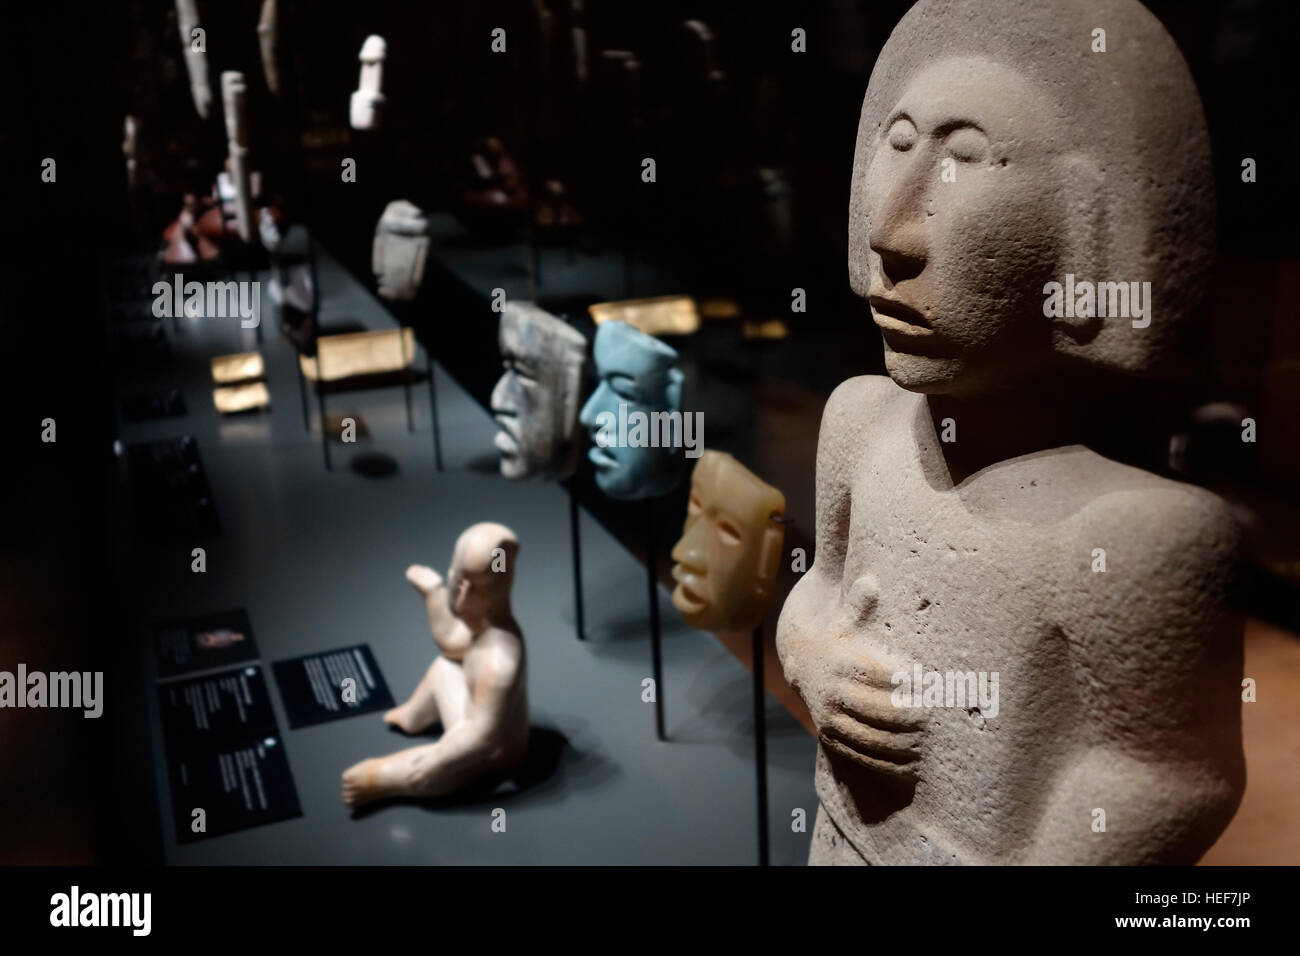 Huastec / Téenek scultura di pietra dal Messico al MAS / Museo aan de Stroom, Anversa, Belgio Foto Stock